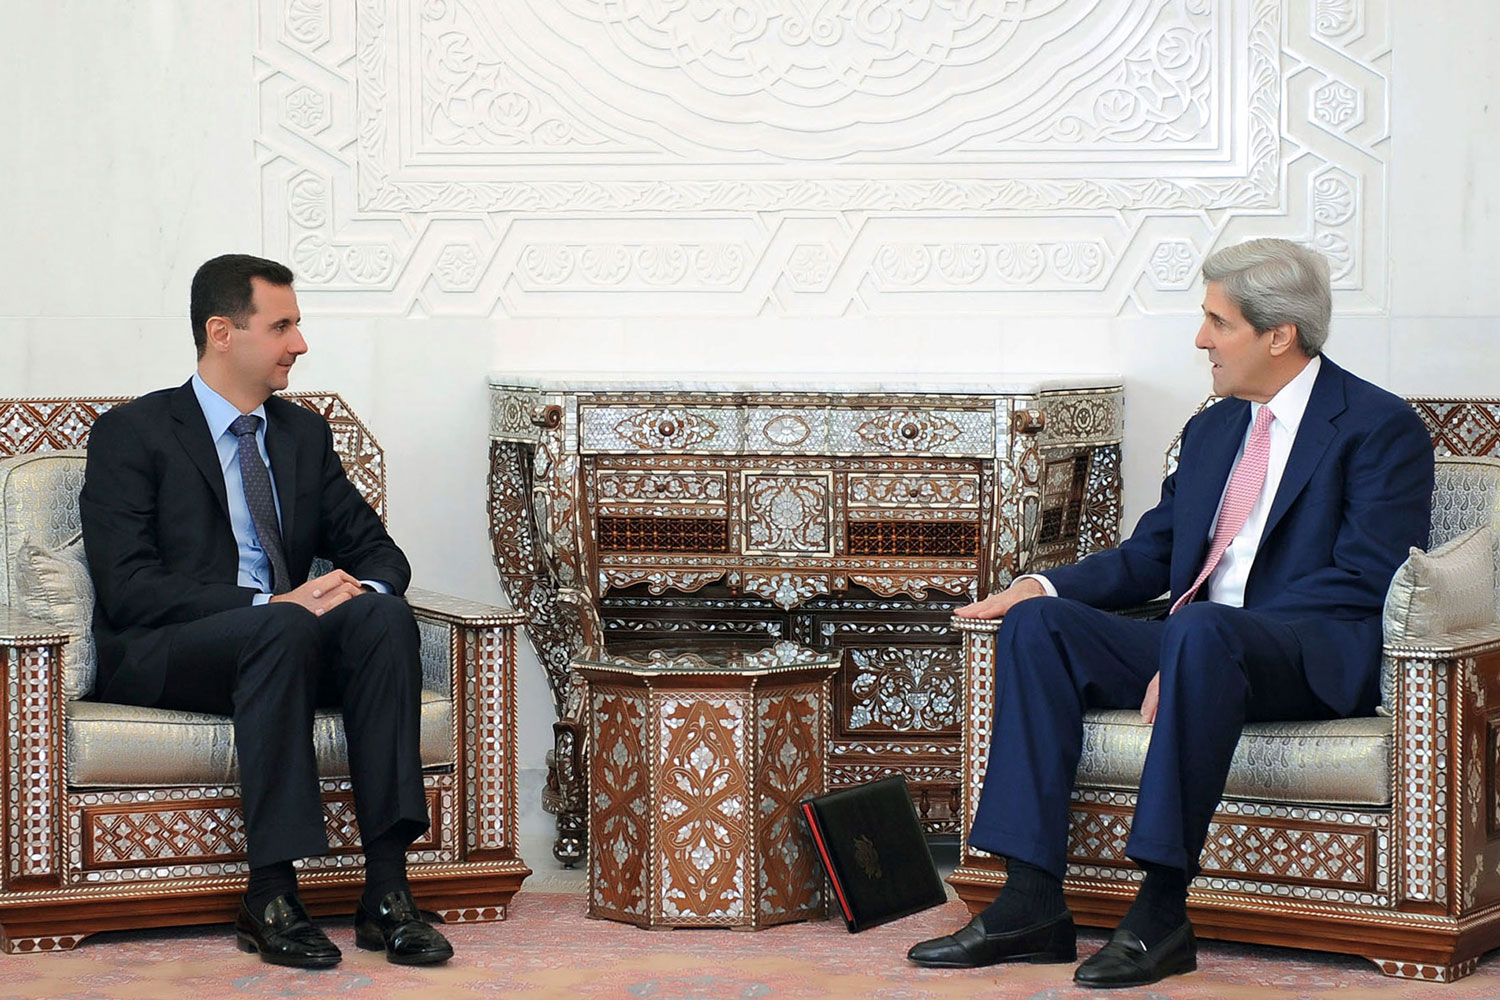 Cuando John Kerry aún se reunía con al-Assad